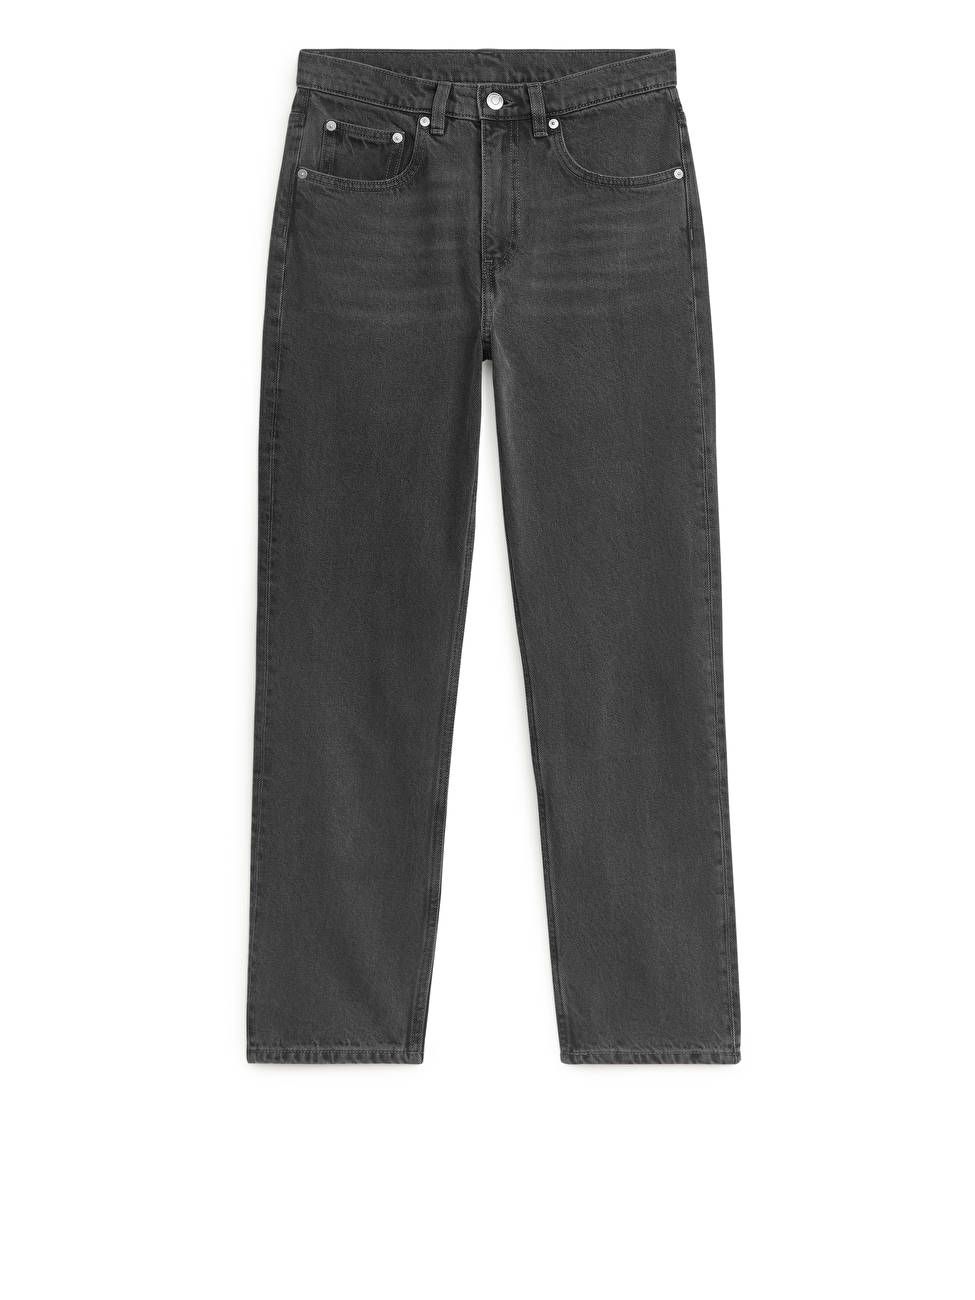 JADE CROPPED Slim Jeans | ARKET (US&UK)